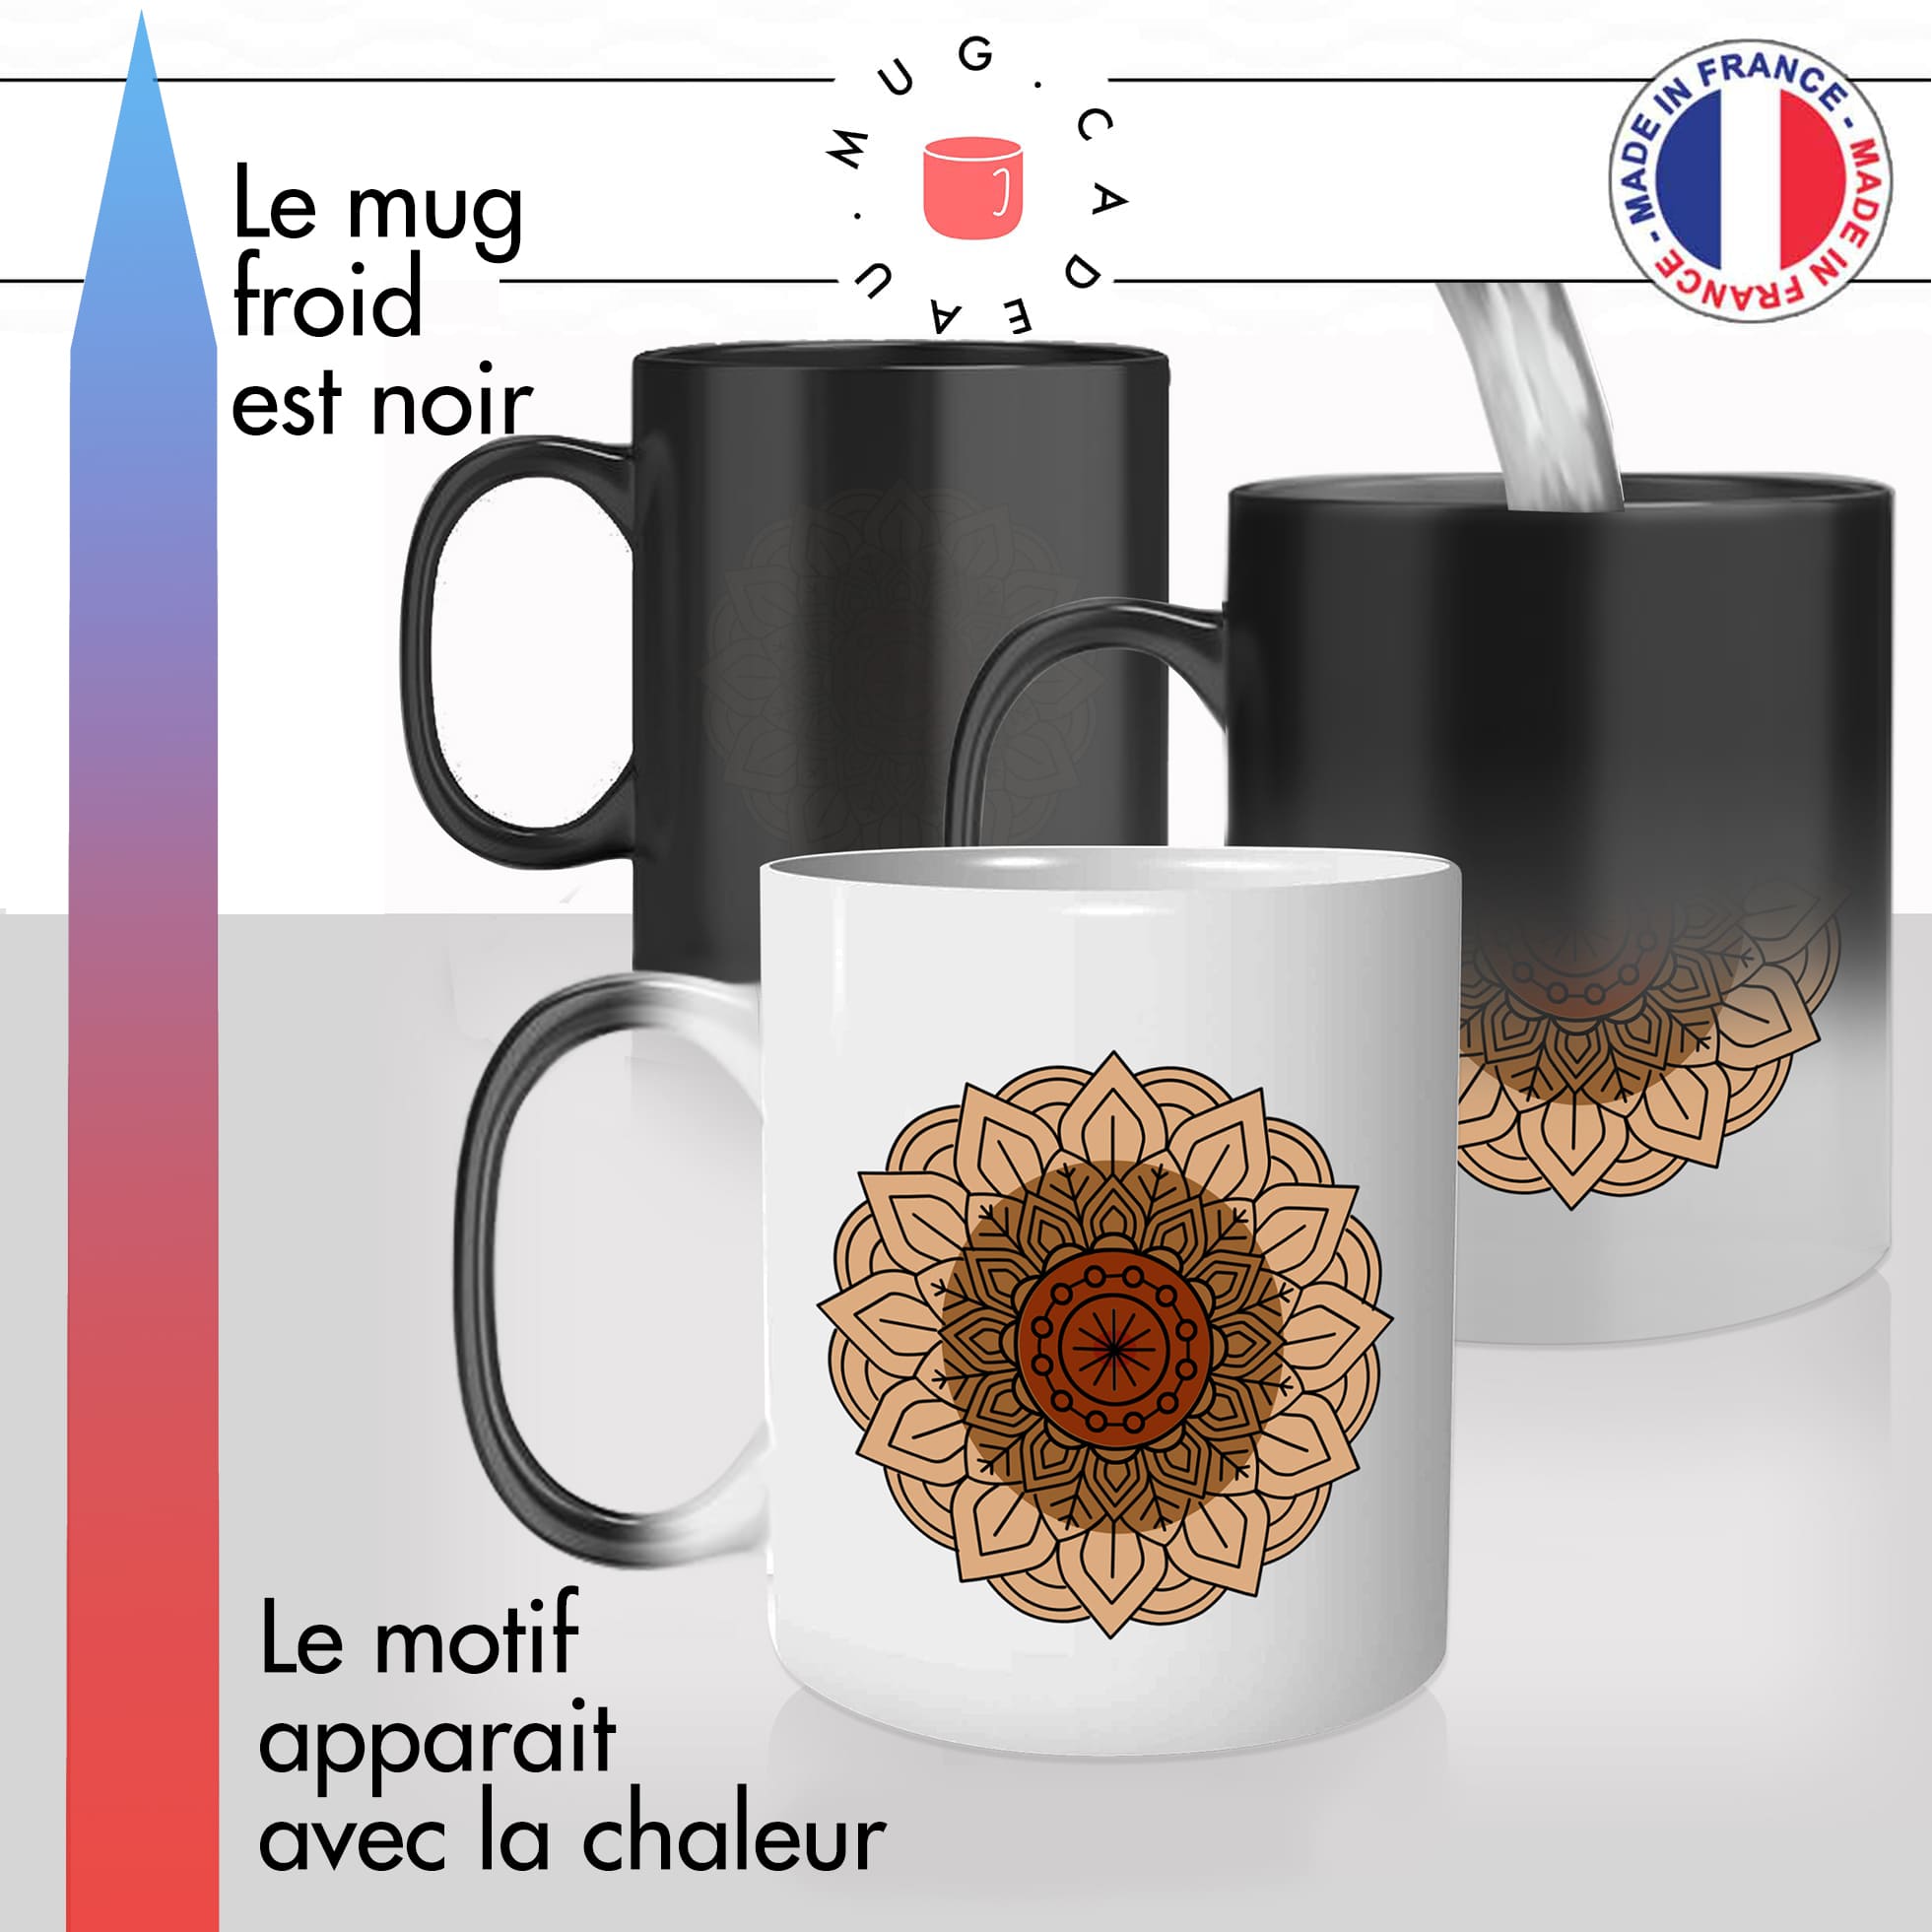 mug magique thermoréactif thermo chauffant personnalisé dessin fleur mandala couleurs personnalisable idée cadeau fun original